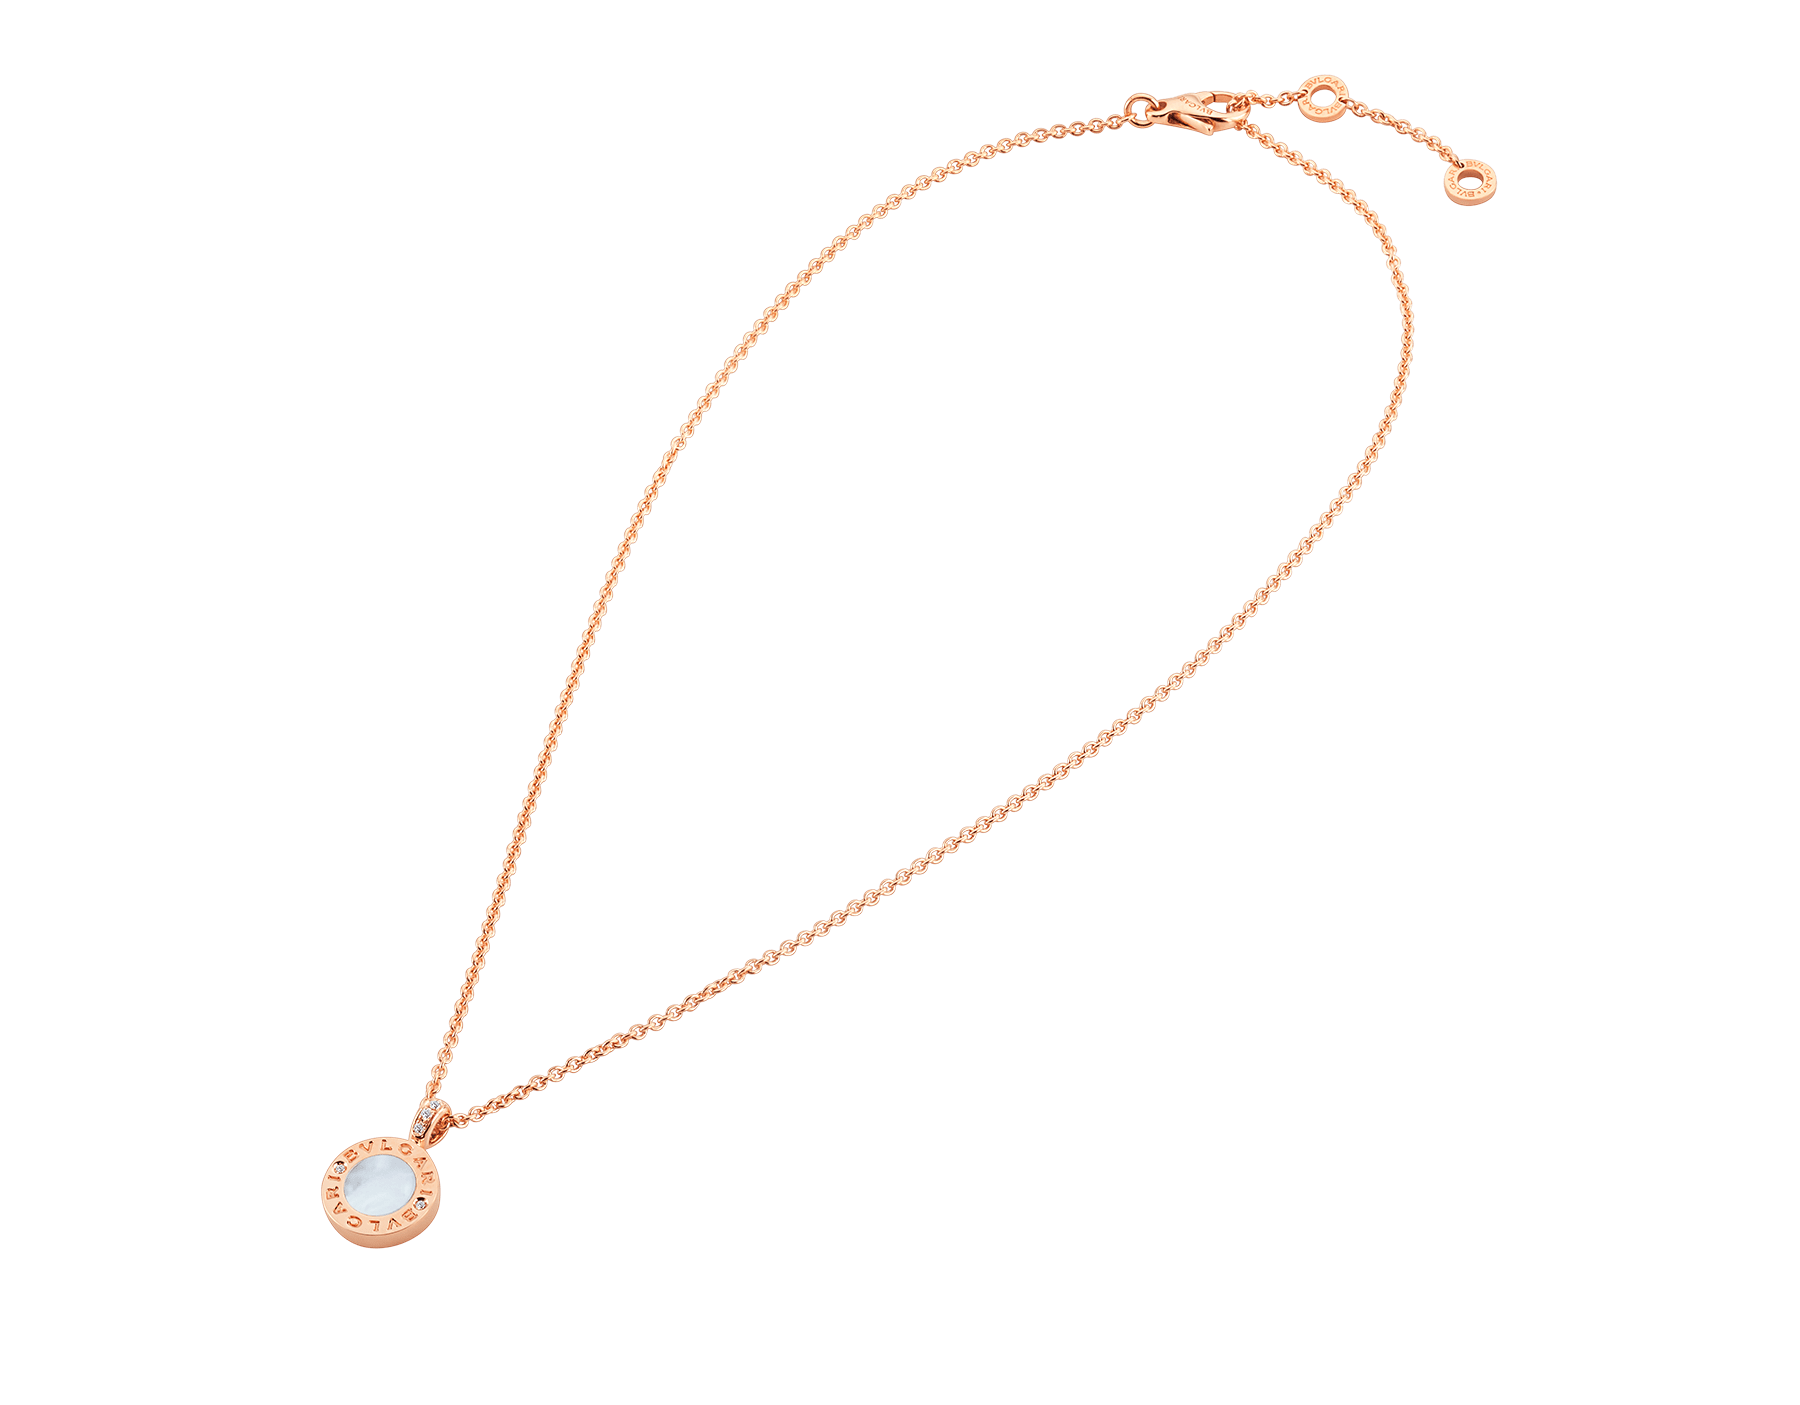 bvlgari necklace buy online